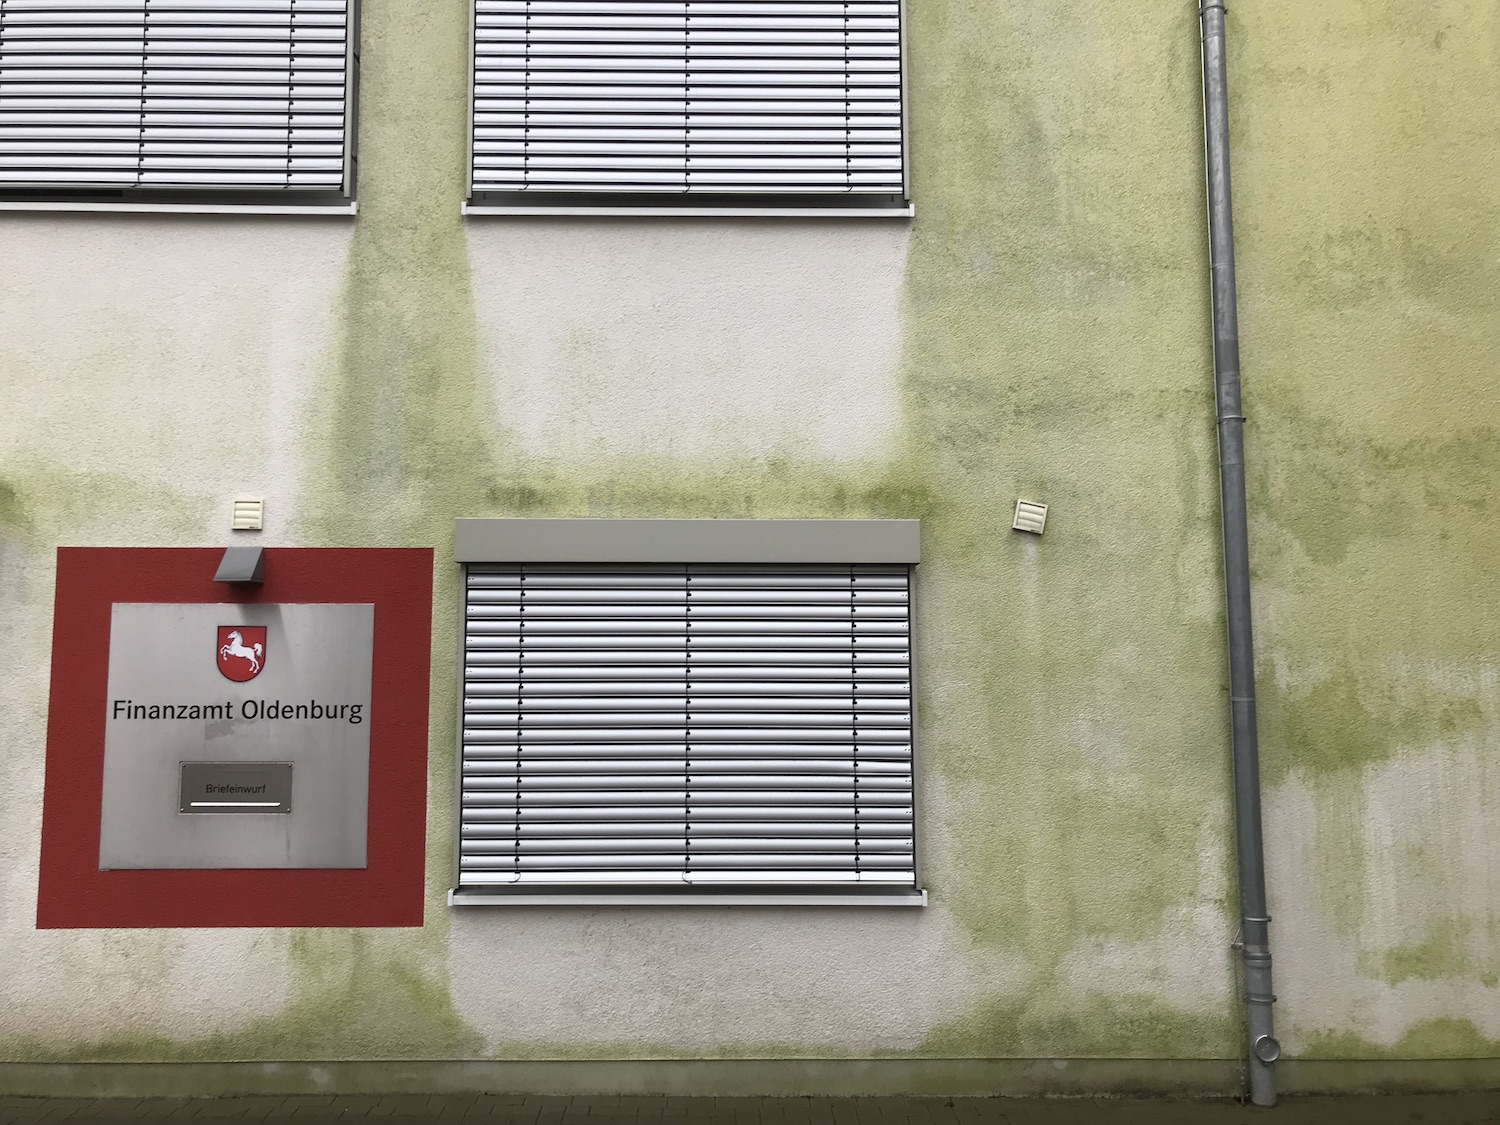 Grün vermooste Wand, darin eingelassen: Briefkasten mit der Aufschrift Finanzamt Oldenburg